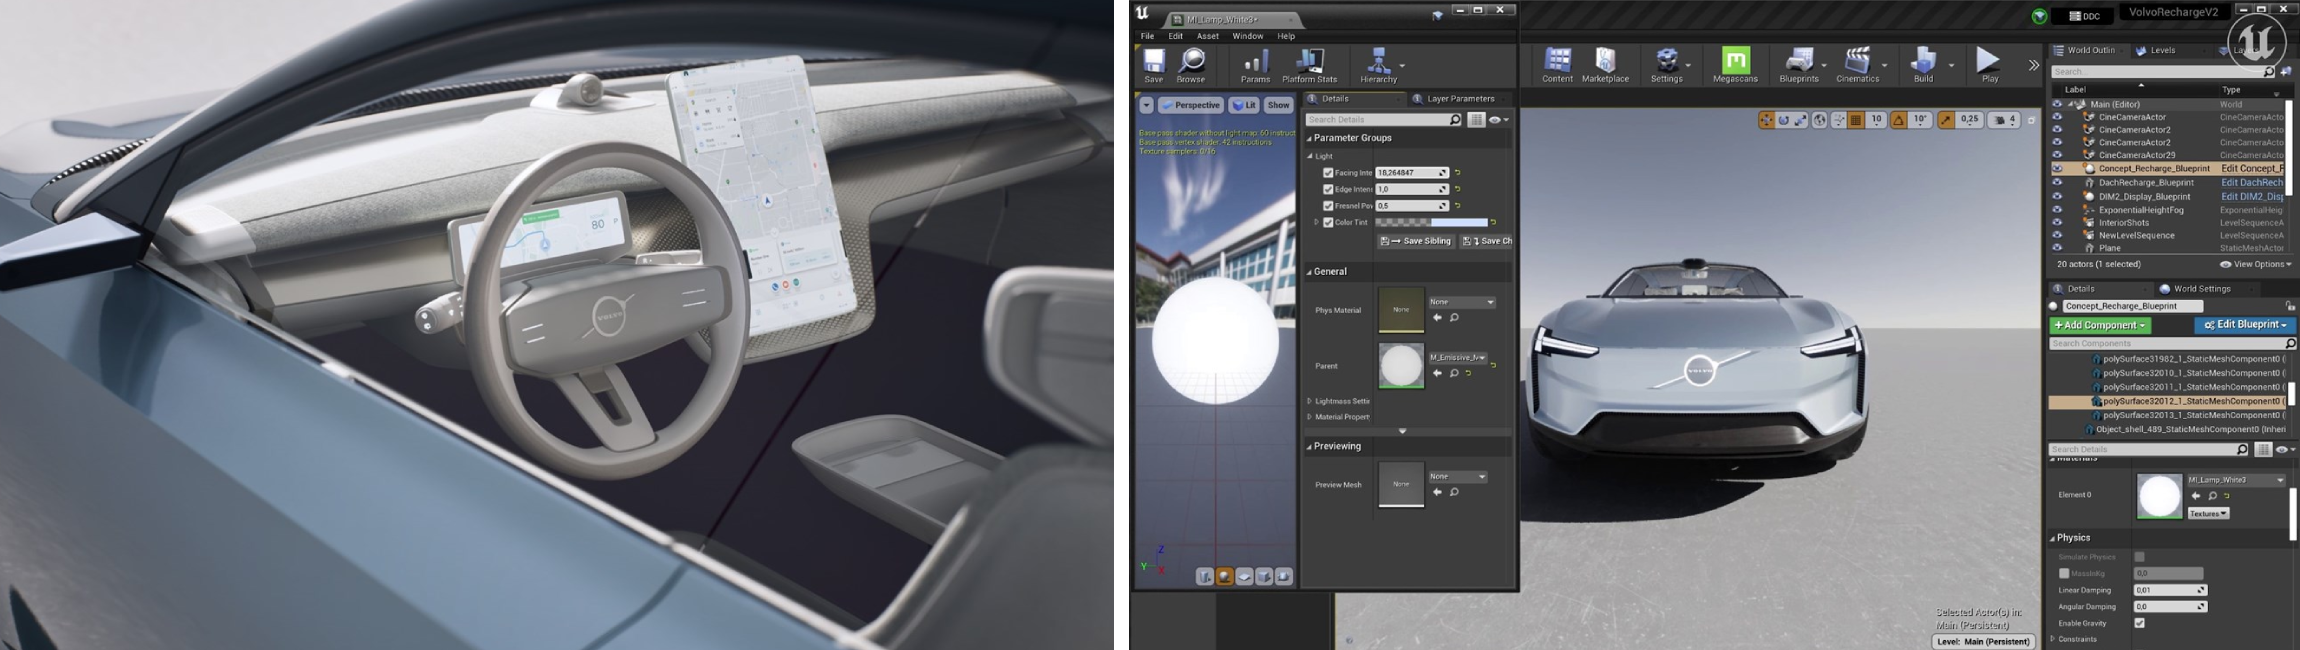 Volvo Cars и Epic Games обеспечивают фотореалистичную визуализацию в реальном времени внутри автомобилей Volvo